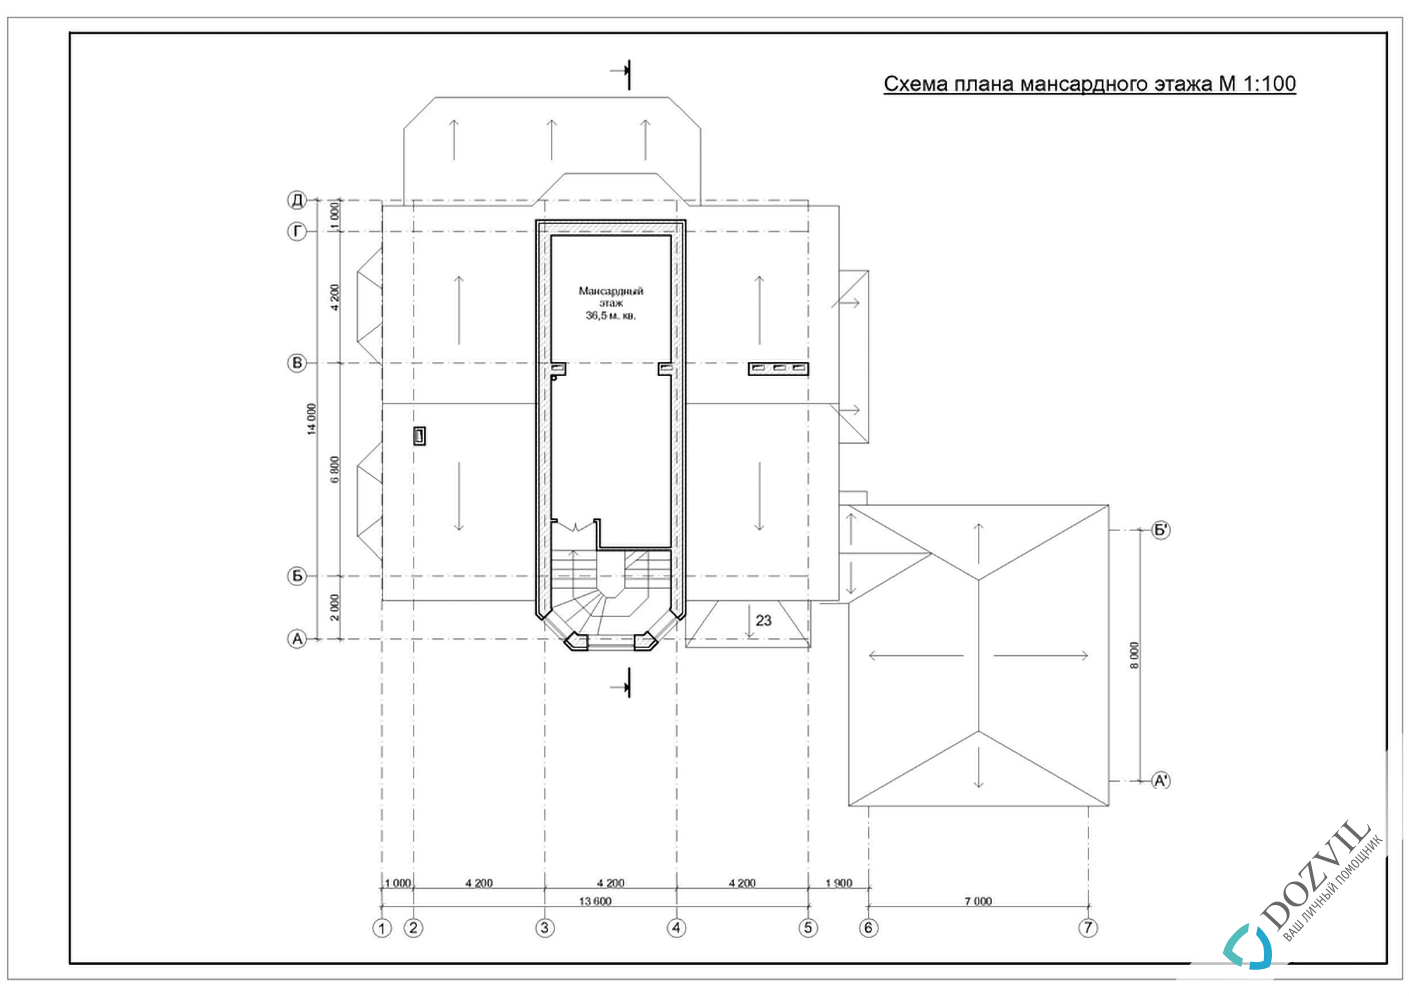 Дозвіл на будівництво> Будинки з загальною площею до 500 квадратних метрів > 2 етап - Розробка ескізу намірів будівництва